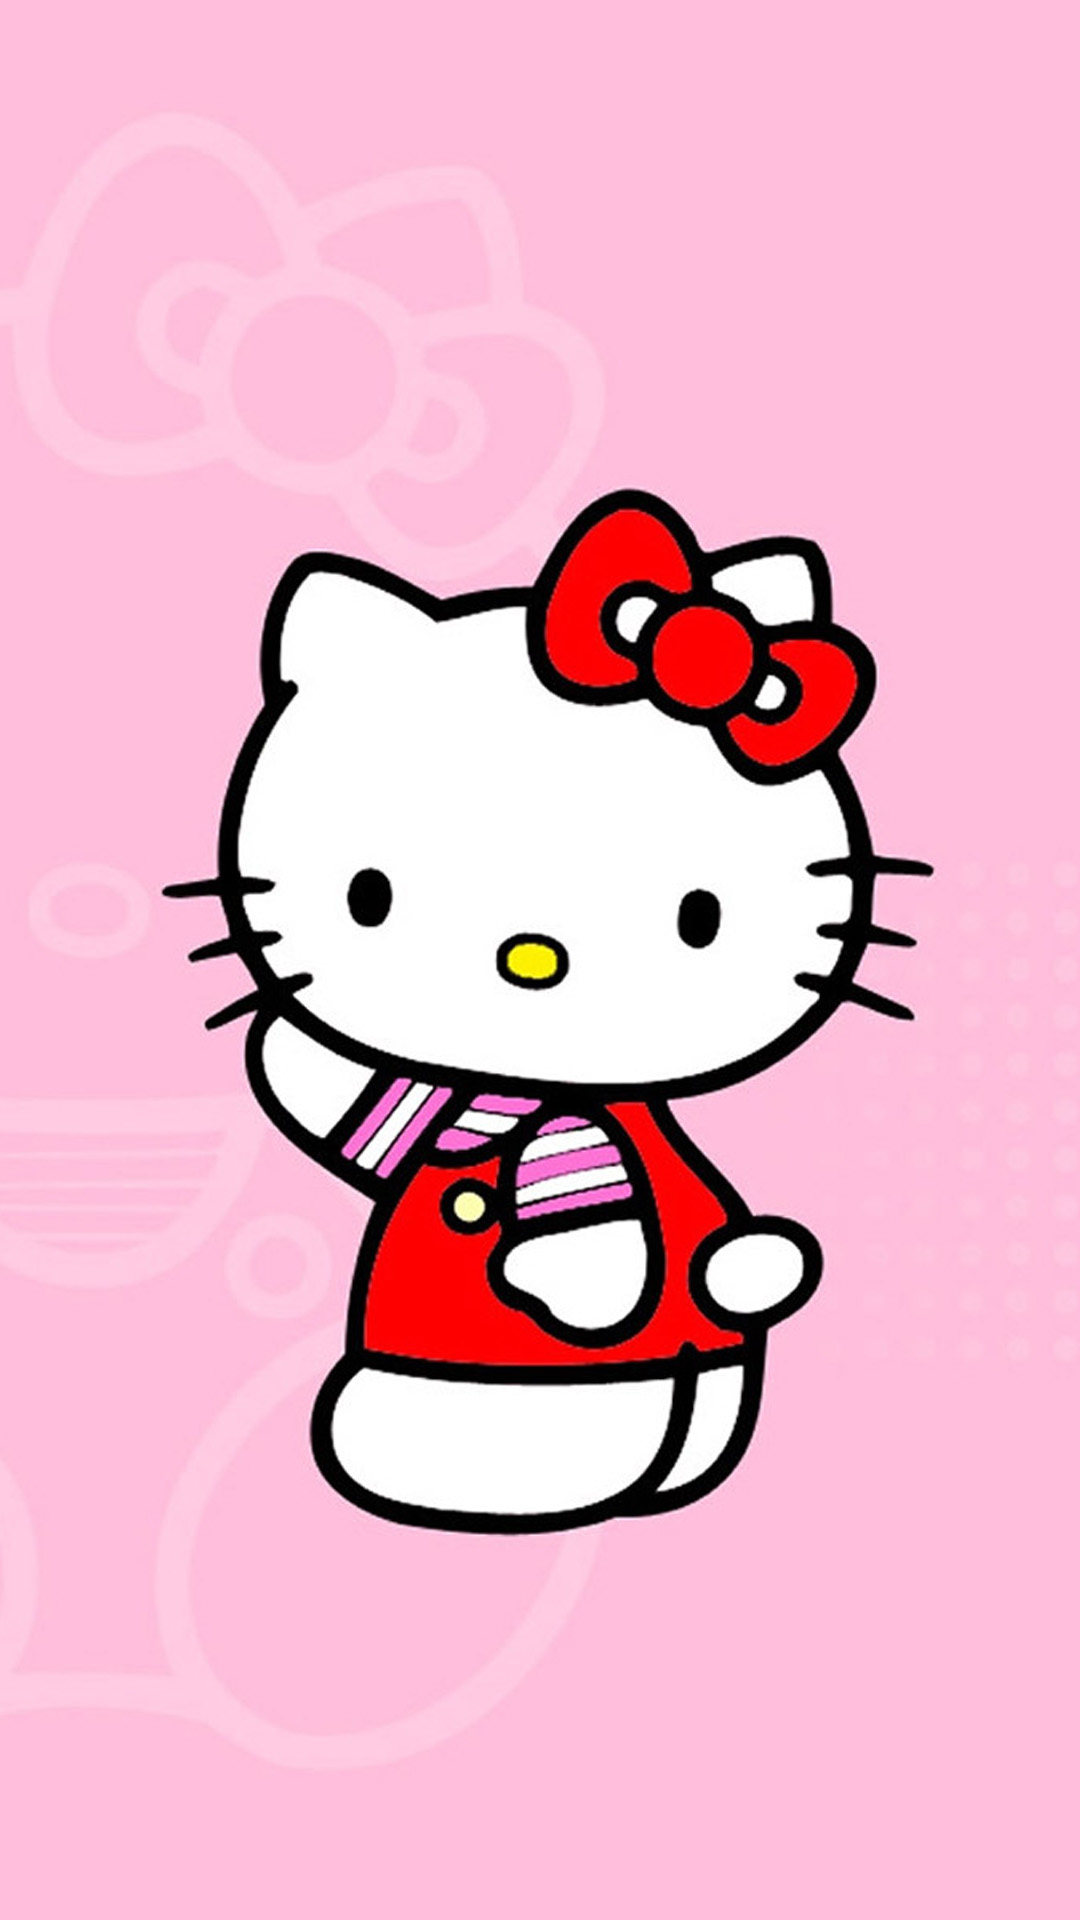 Hello Kitty Wallpapers cho Iphone sẽ khiến trái tim bạn tan chảy với sự ngọt ngào, dễ thương của chú mèo xinh đẹp. Những hình nền độc đáo với Hello Kitty sẽ khiến điện thoại của bạn trở nên đáng yêu và đầy cá tính.